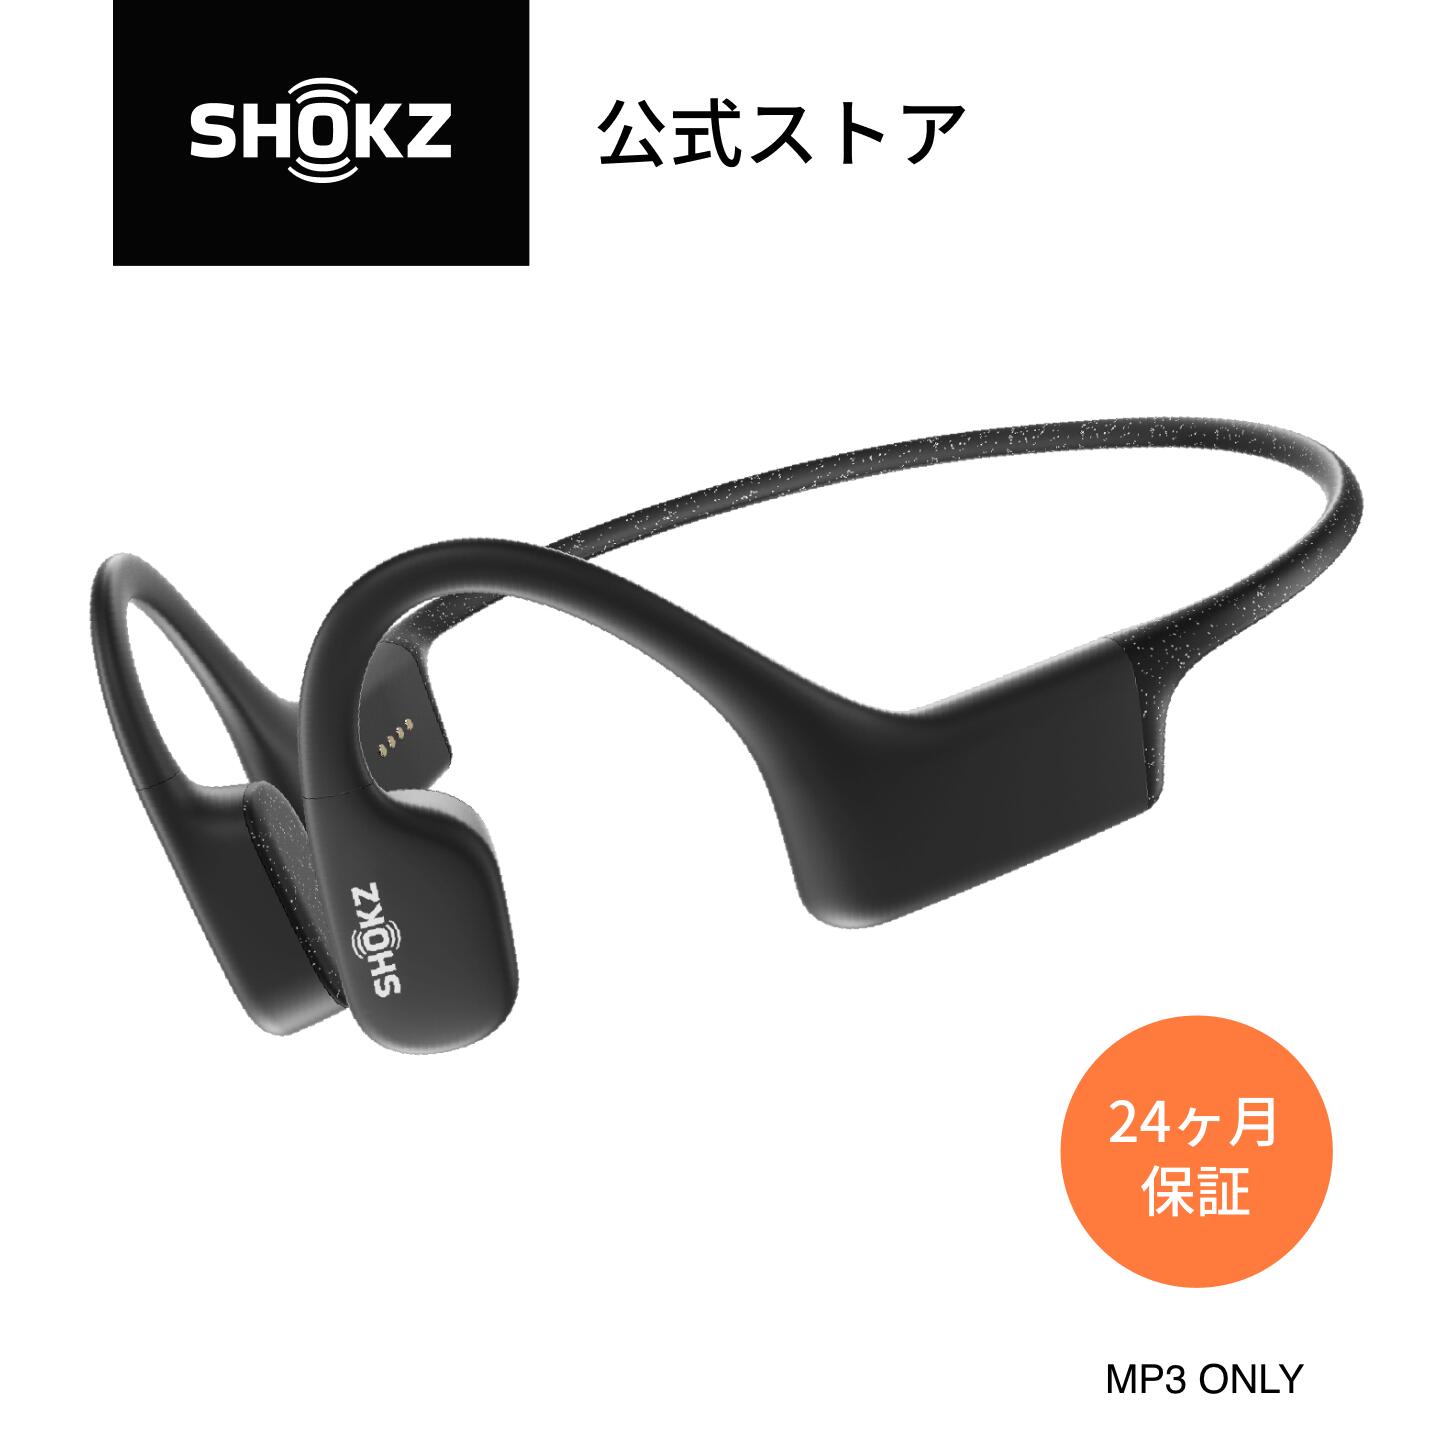 オーディオ 【MP3 ONLY】OpenSwim Shokz(ショックス) 骨伝導 デジタルオーディオプレーヤー ワイヤレス 4GB スポーツ用 IP68防水 超軽量29g 外音取込み ブラック ブルー S700 水泳用mp3 耳かけ式 2年保証